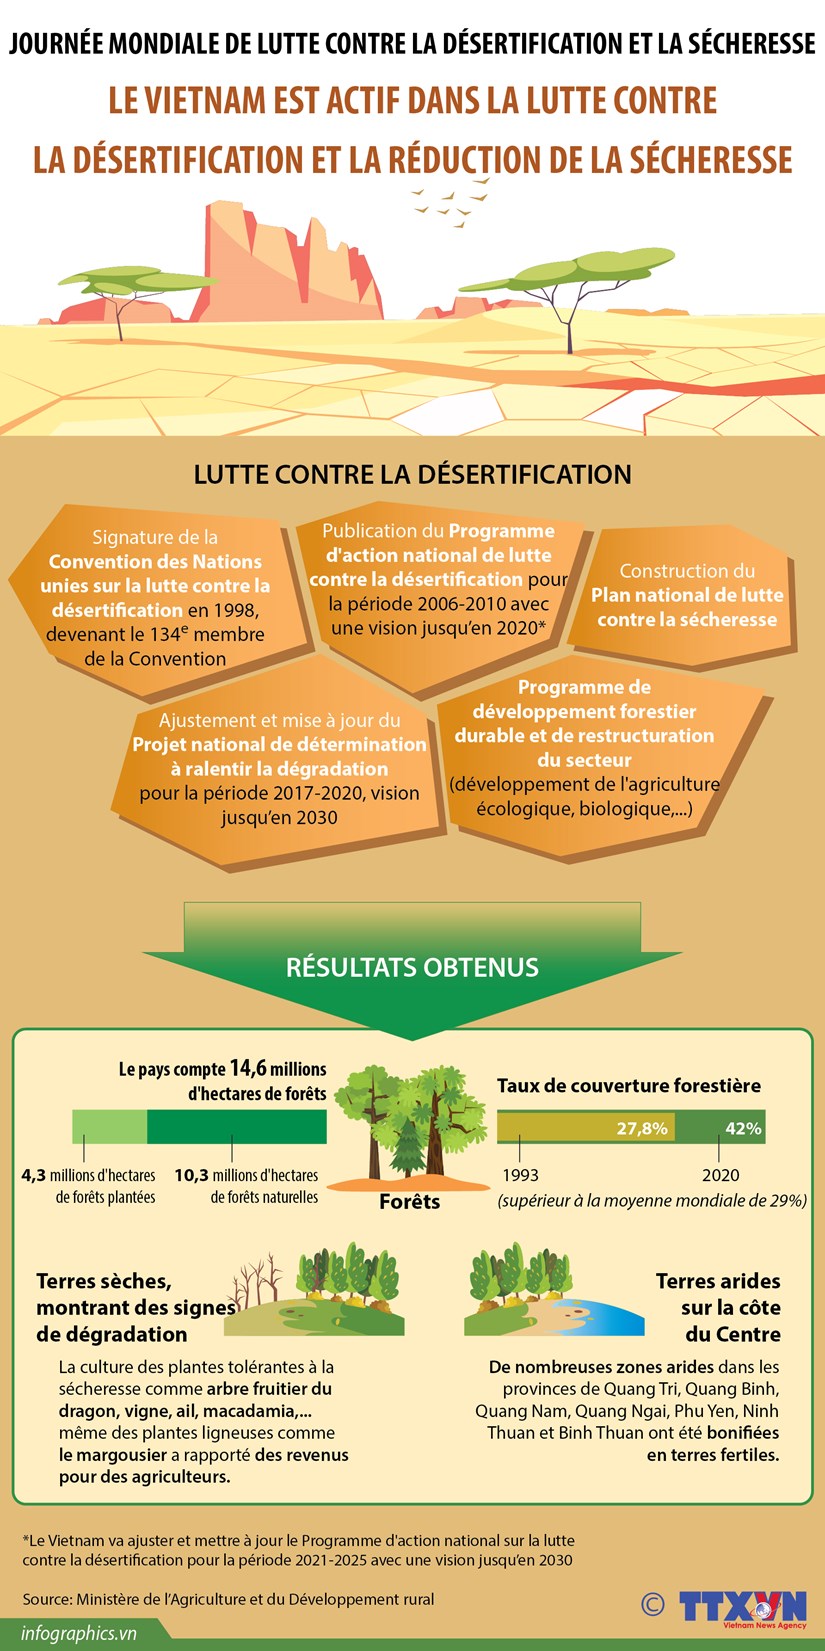 Le Vietnam est actif dans la lutte contre la desertification et la reduction de la secheresse hinh anh 1